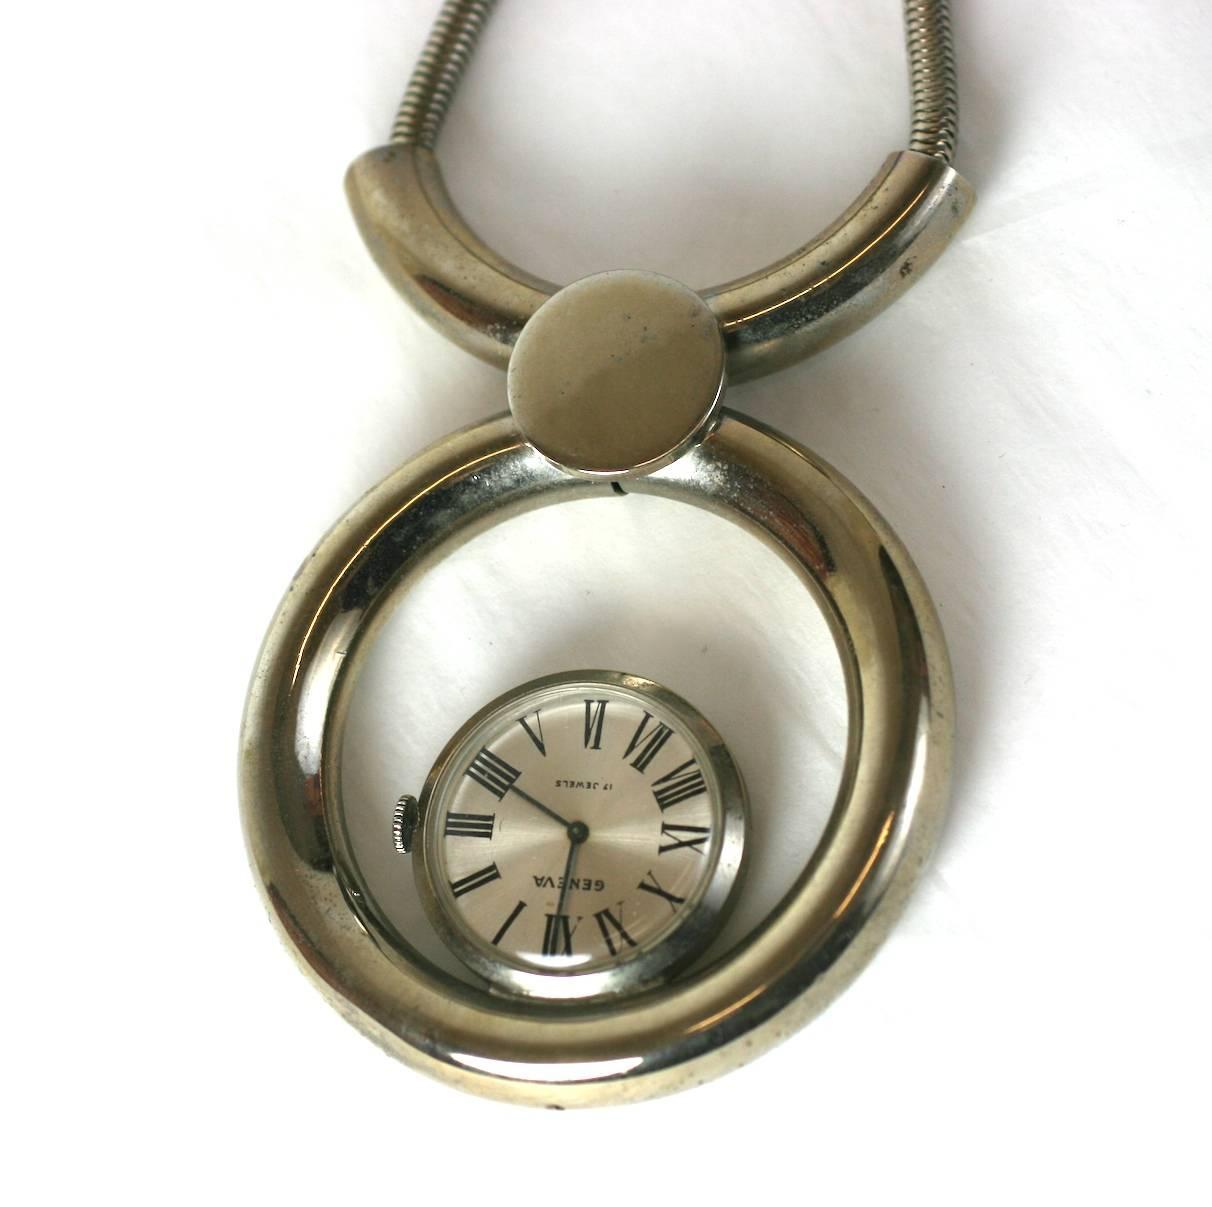 Große Mod Swiss Pendant Watch Halskette ca. 1960er Jahre, Schweiz. Ein verchromtes Metallrohr bildet einen Anhänger mit einer schwebenden Uhr, die von einer dicken silbernen Schlangenkette gehalten wird. 1960er Jahre Schweizer. Ausgezeichneter